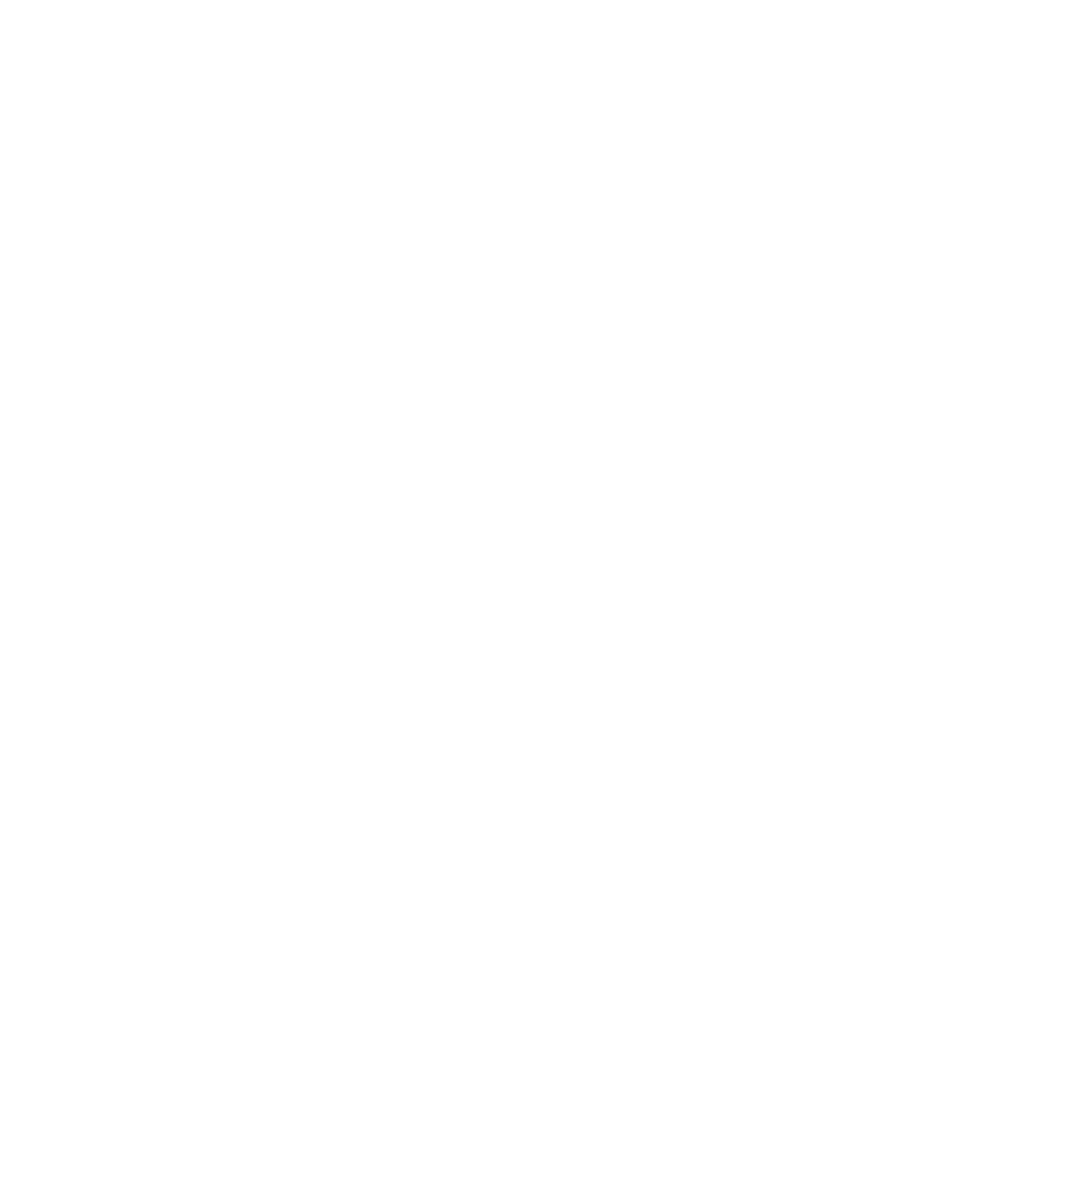 The Harlot Salon